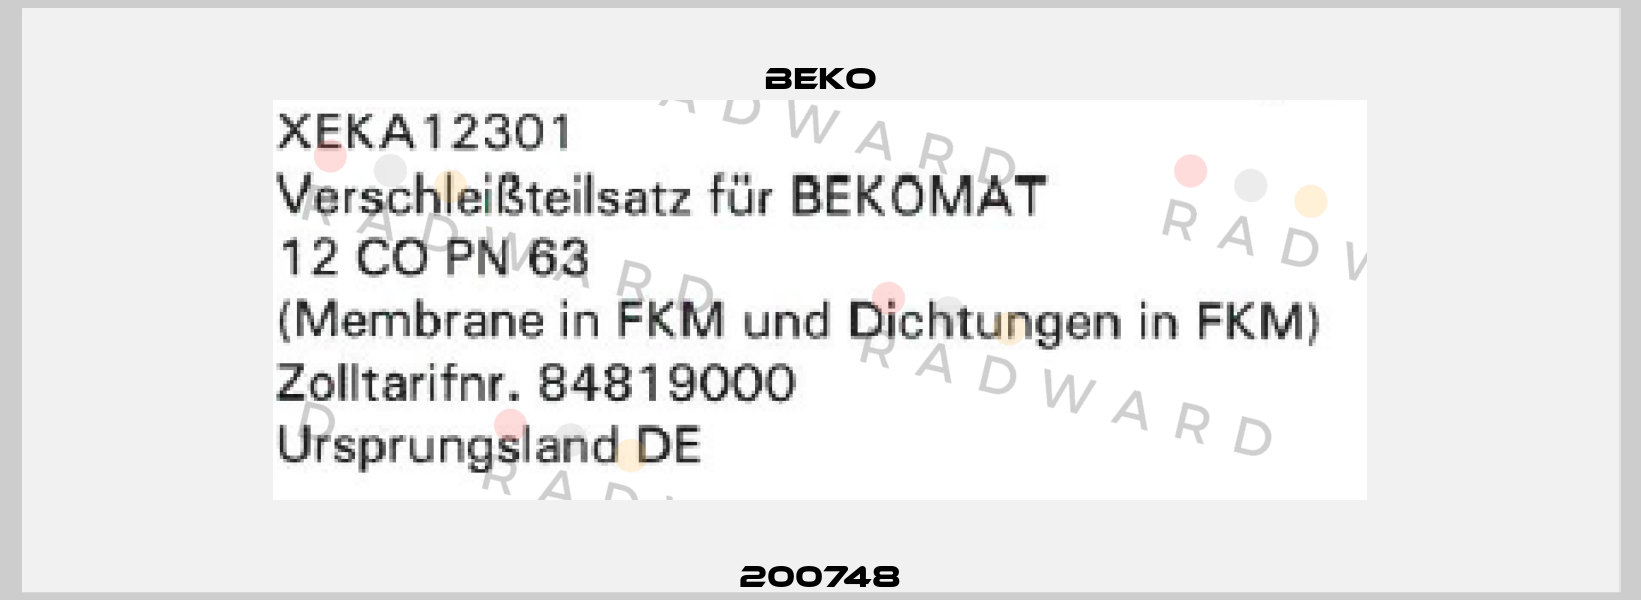 200748 Beko